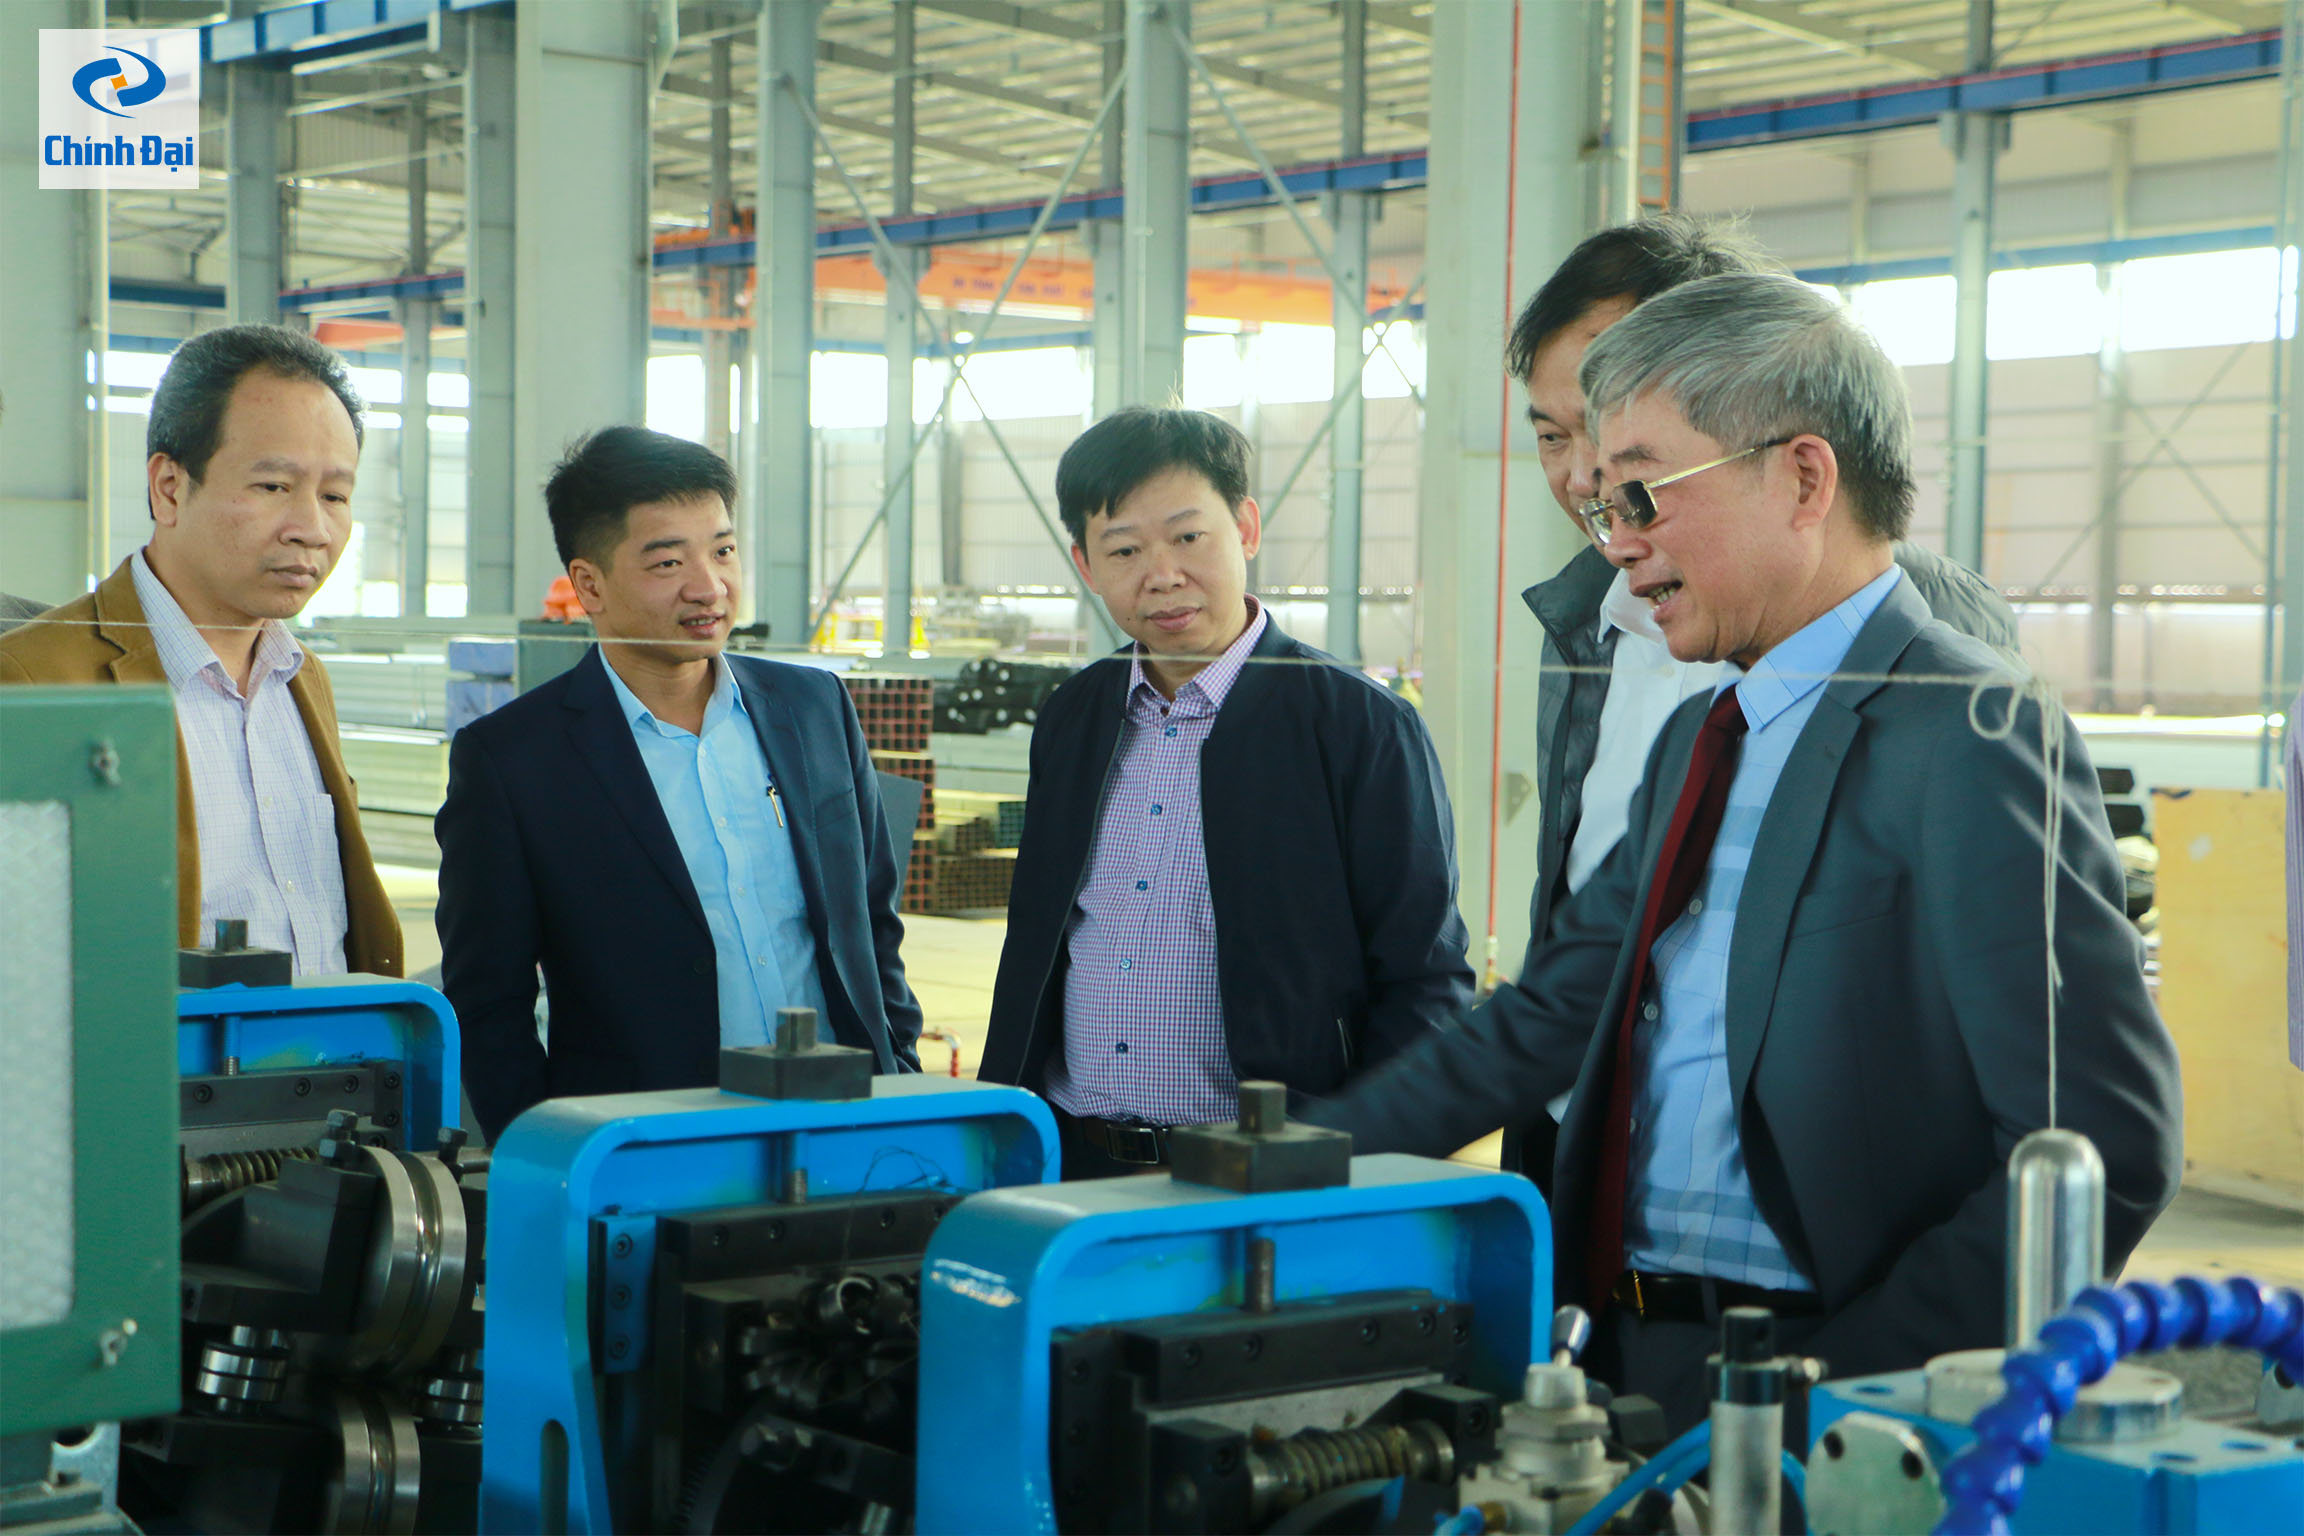 Trường Đại học Kỹ Thuật Công nghiệp Thái Nguyên thăm nhà máy 4.0, nhà máy tiên phong áp dụng các công nghệ, dây chuyền tự động hóa trong sản xuất của Chính Đại